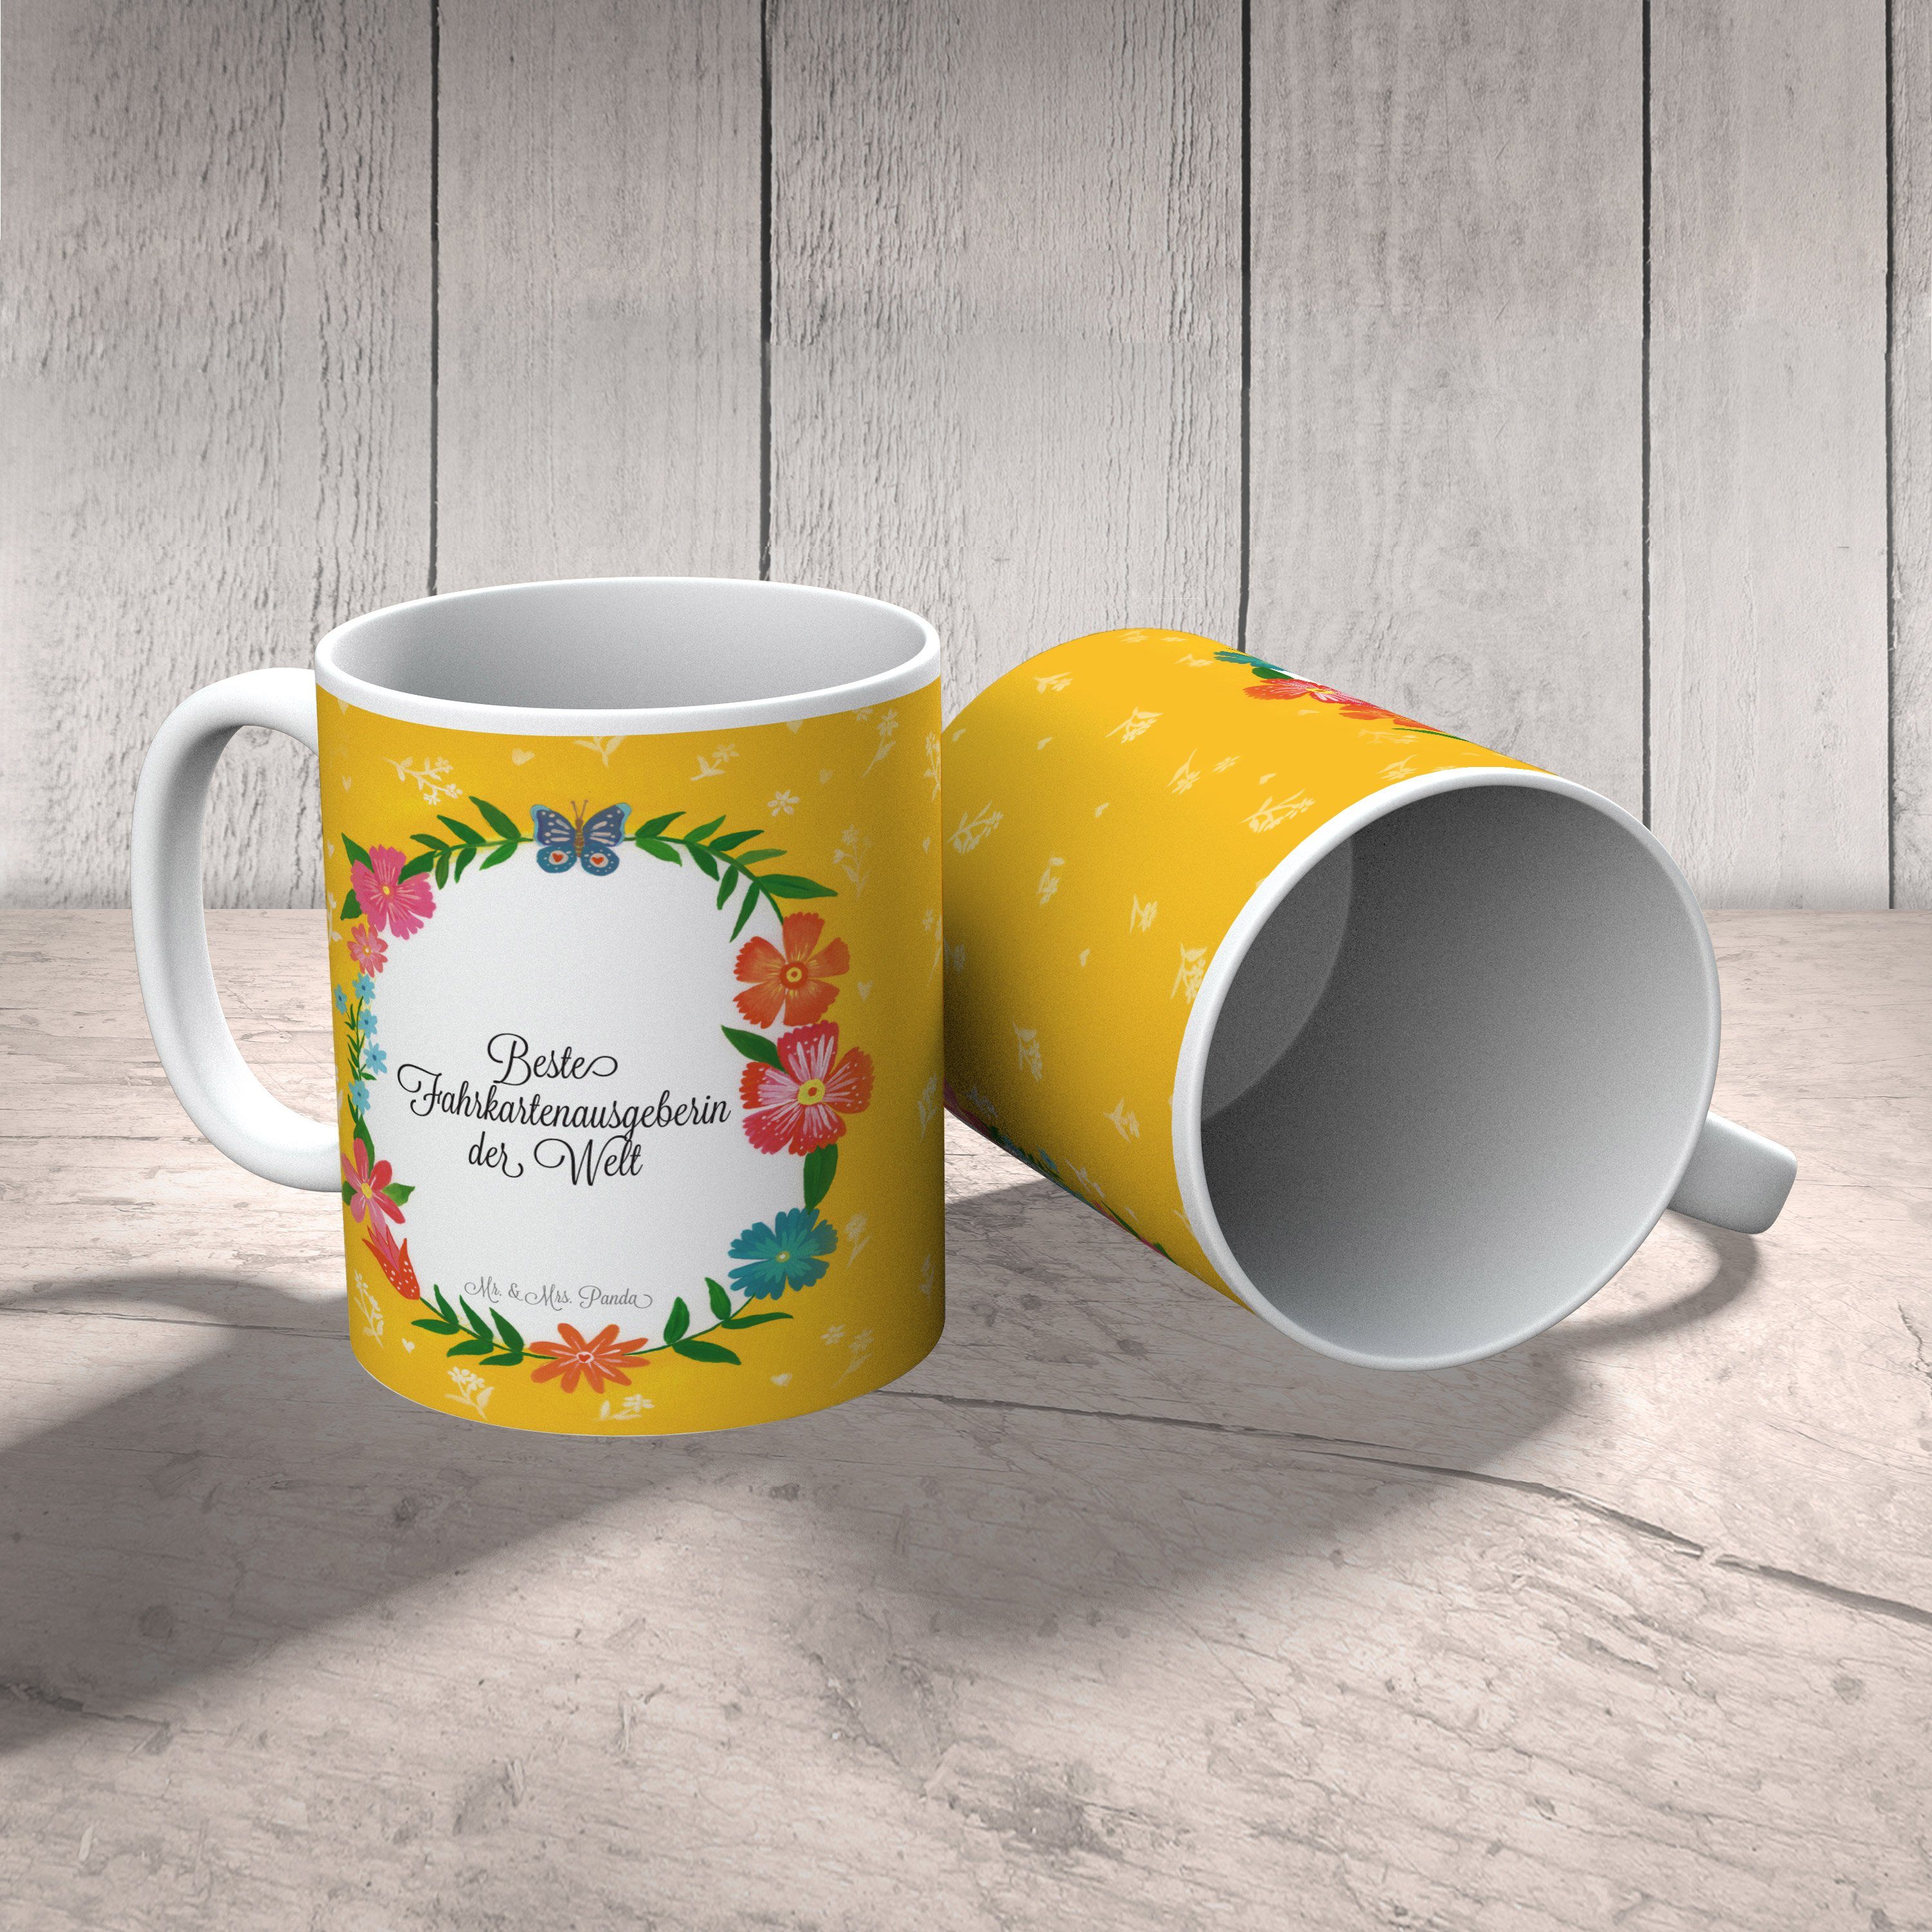 Keramik Tass, Kaffeetasse, Fahrkartenausgeberin Mrs. & Panda Abschied, - Geschenk, Mr. Geschenk Tasse